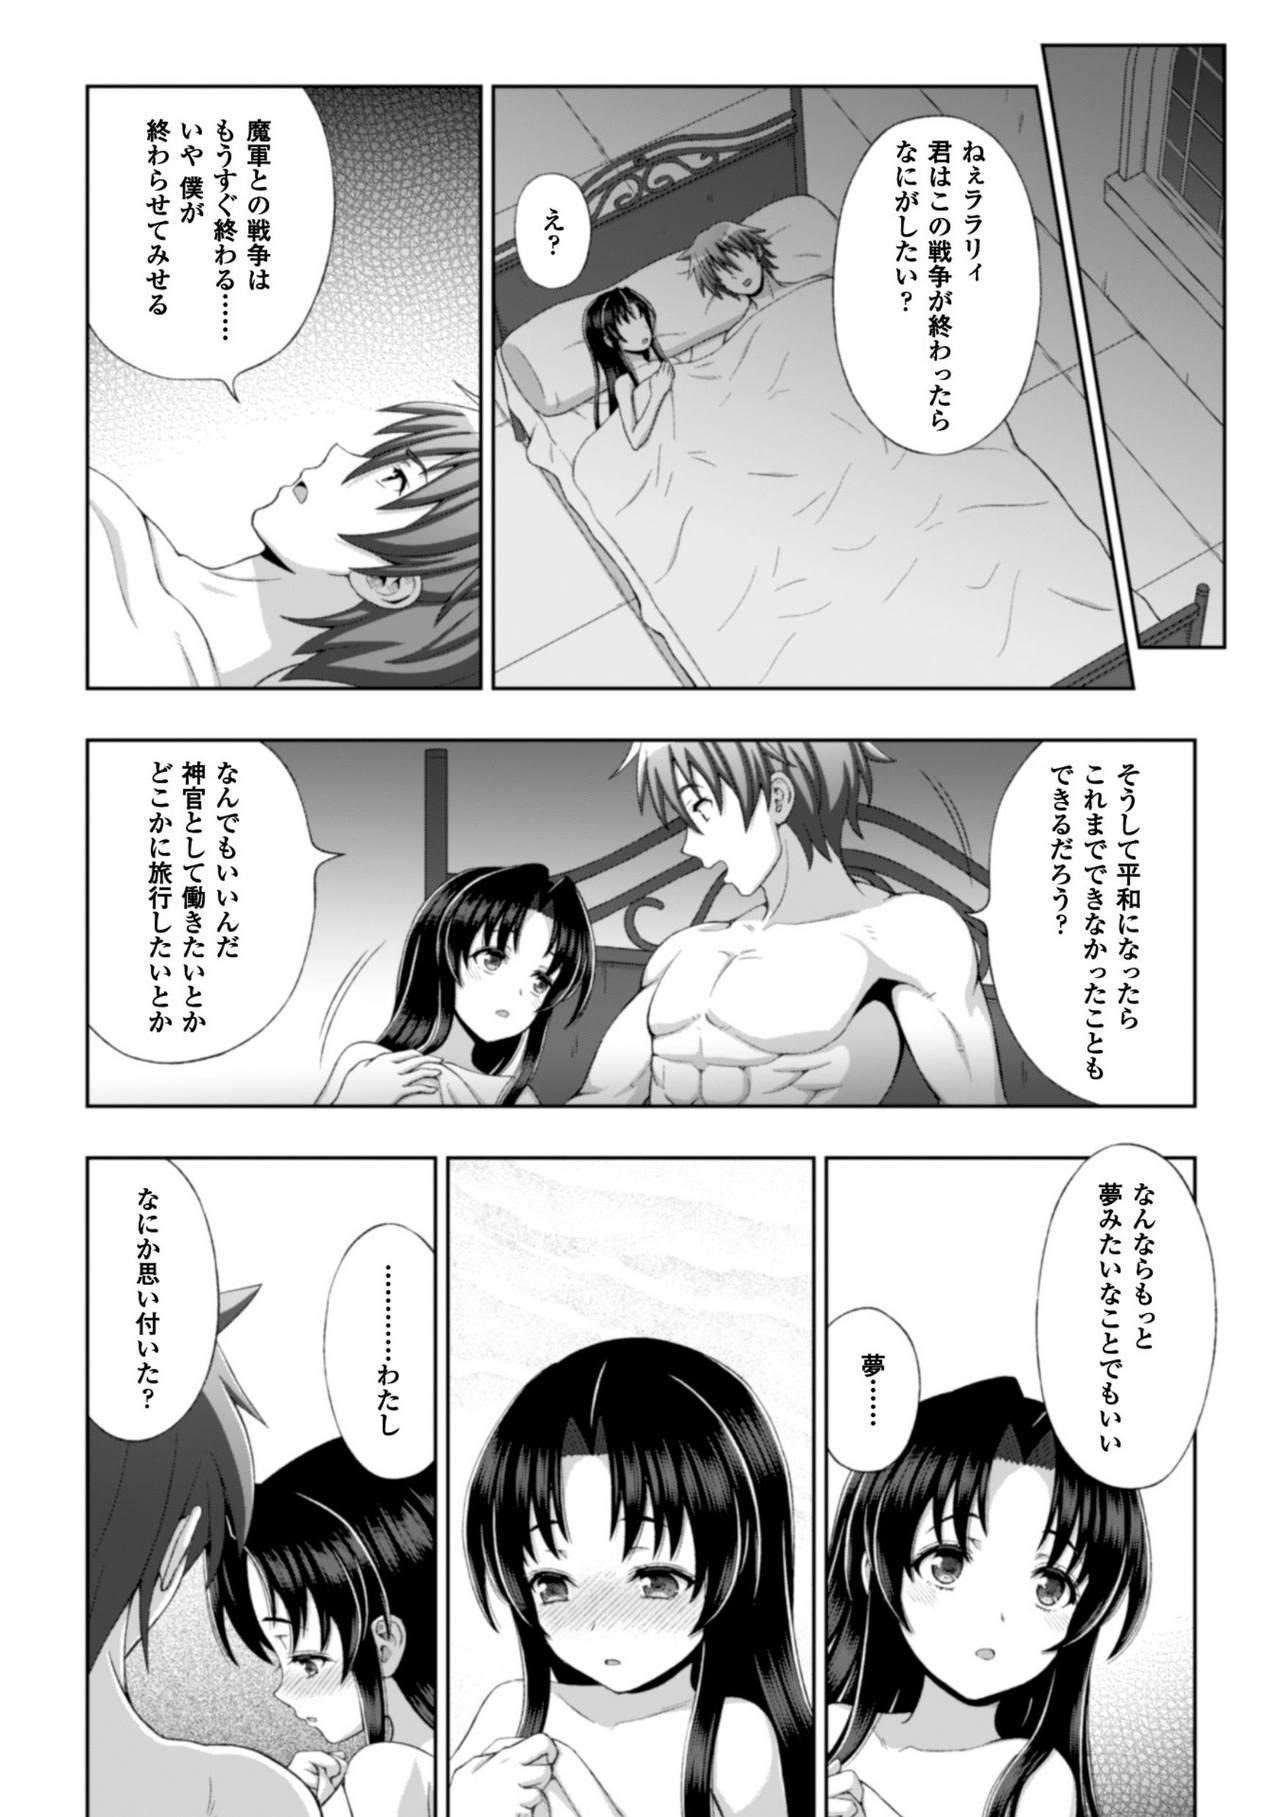 Seigi no Heroine Kangoku File Vol. 8 22